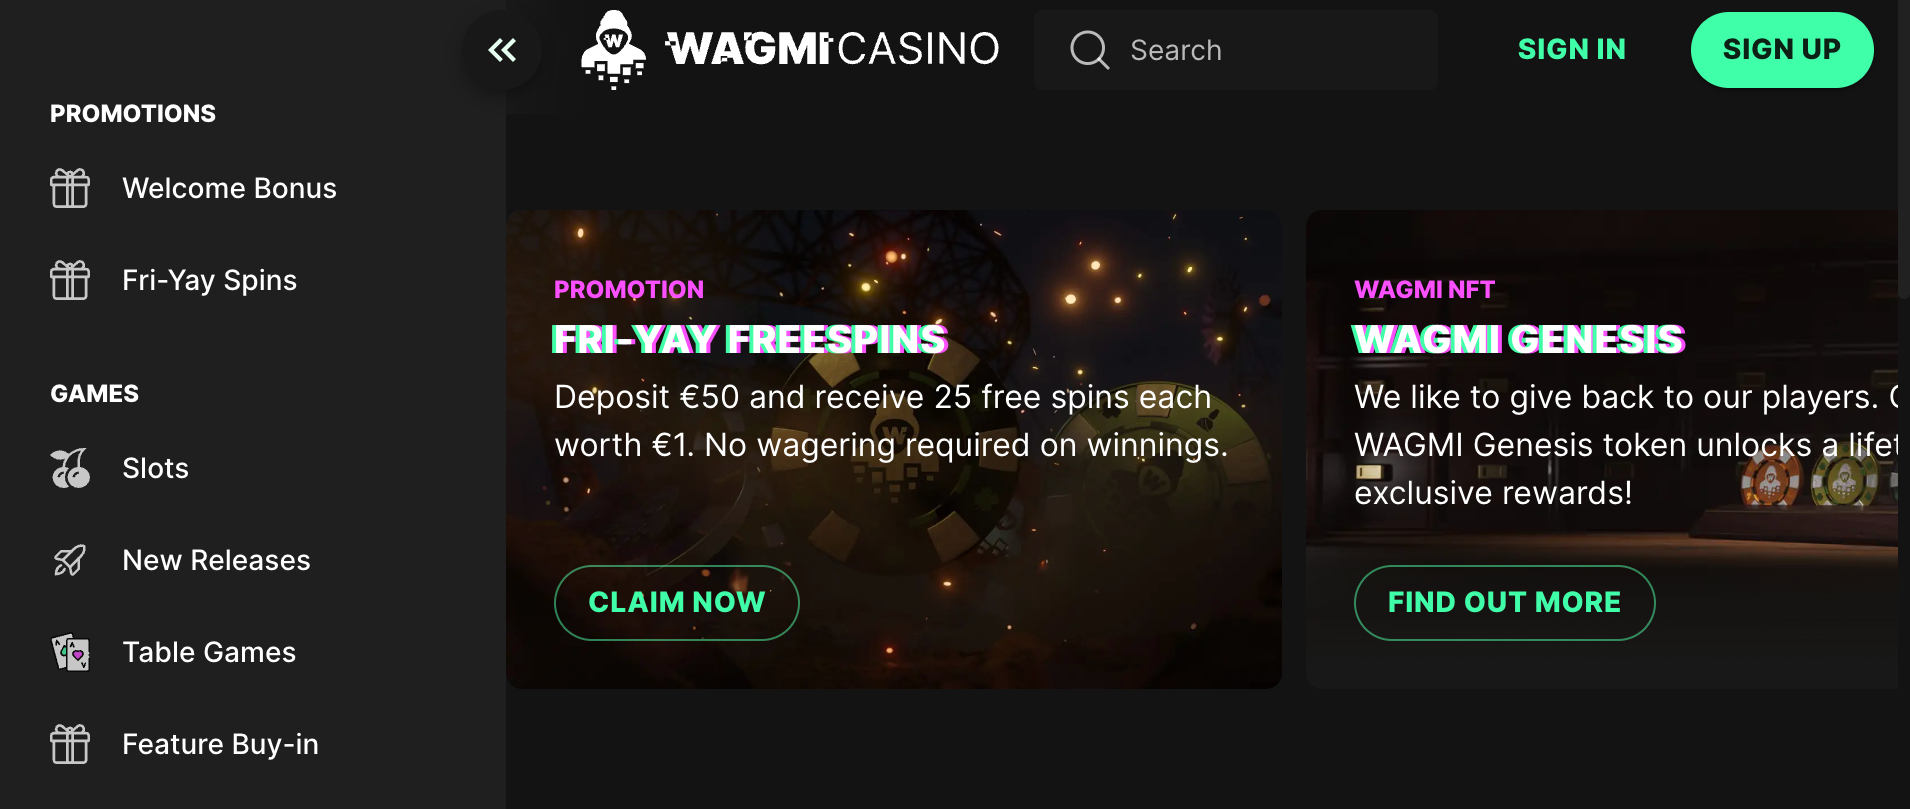 Wagmi Fri-Yay Freespins Promotion